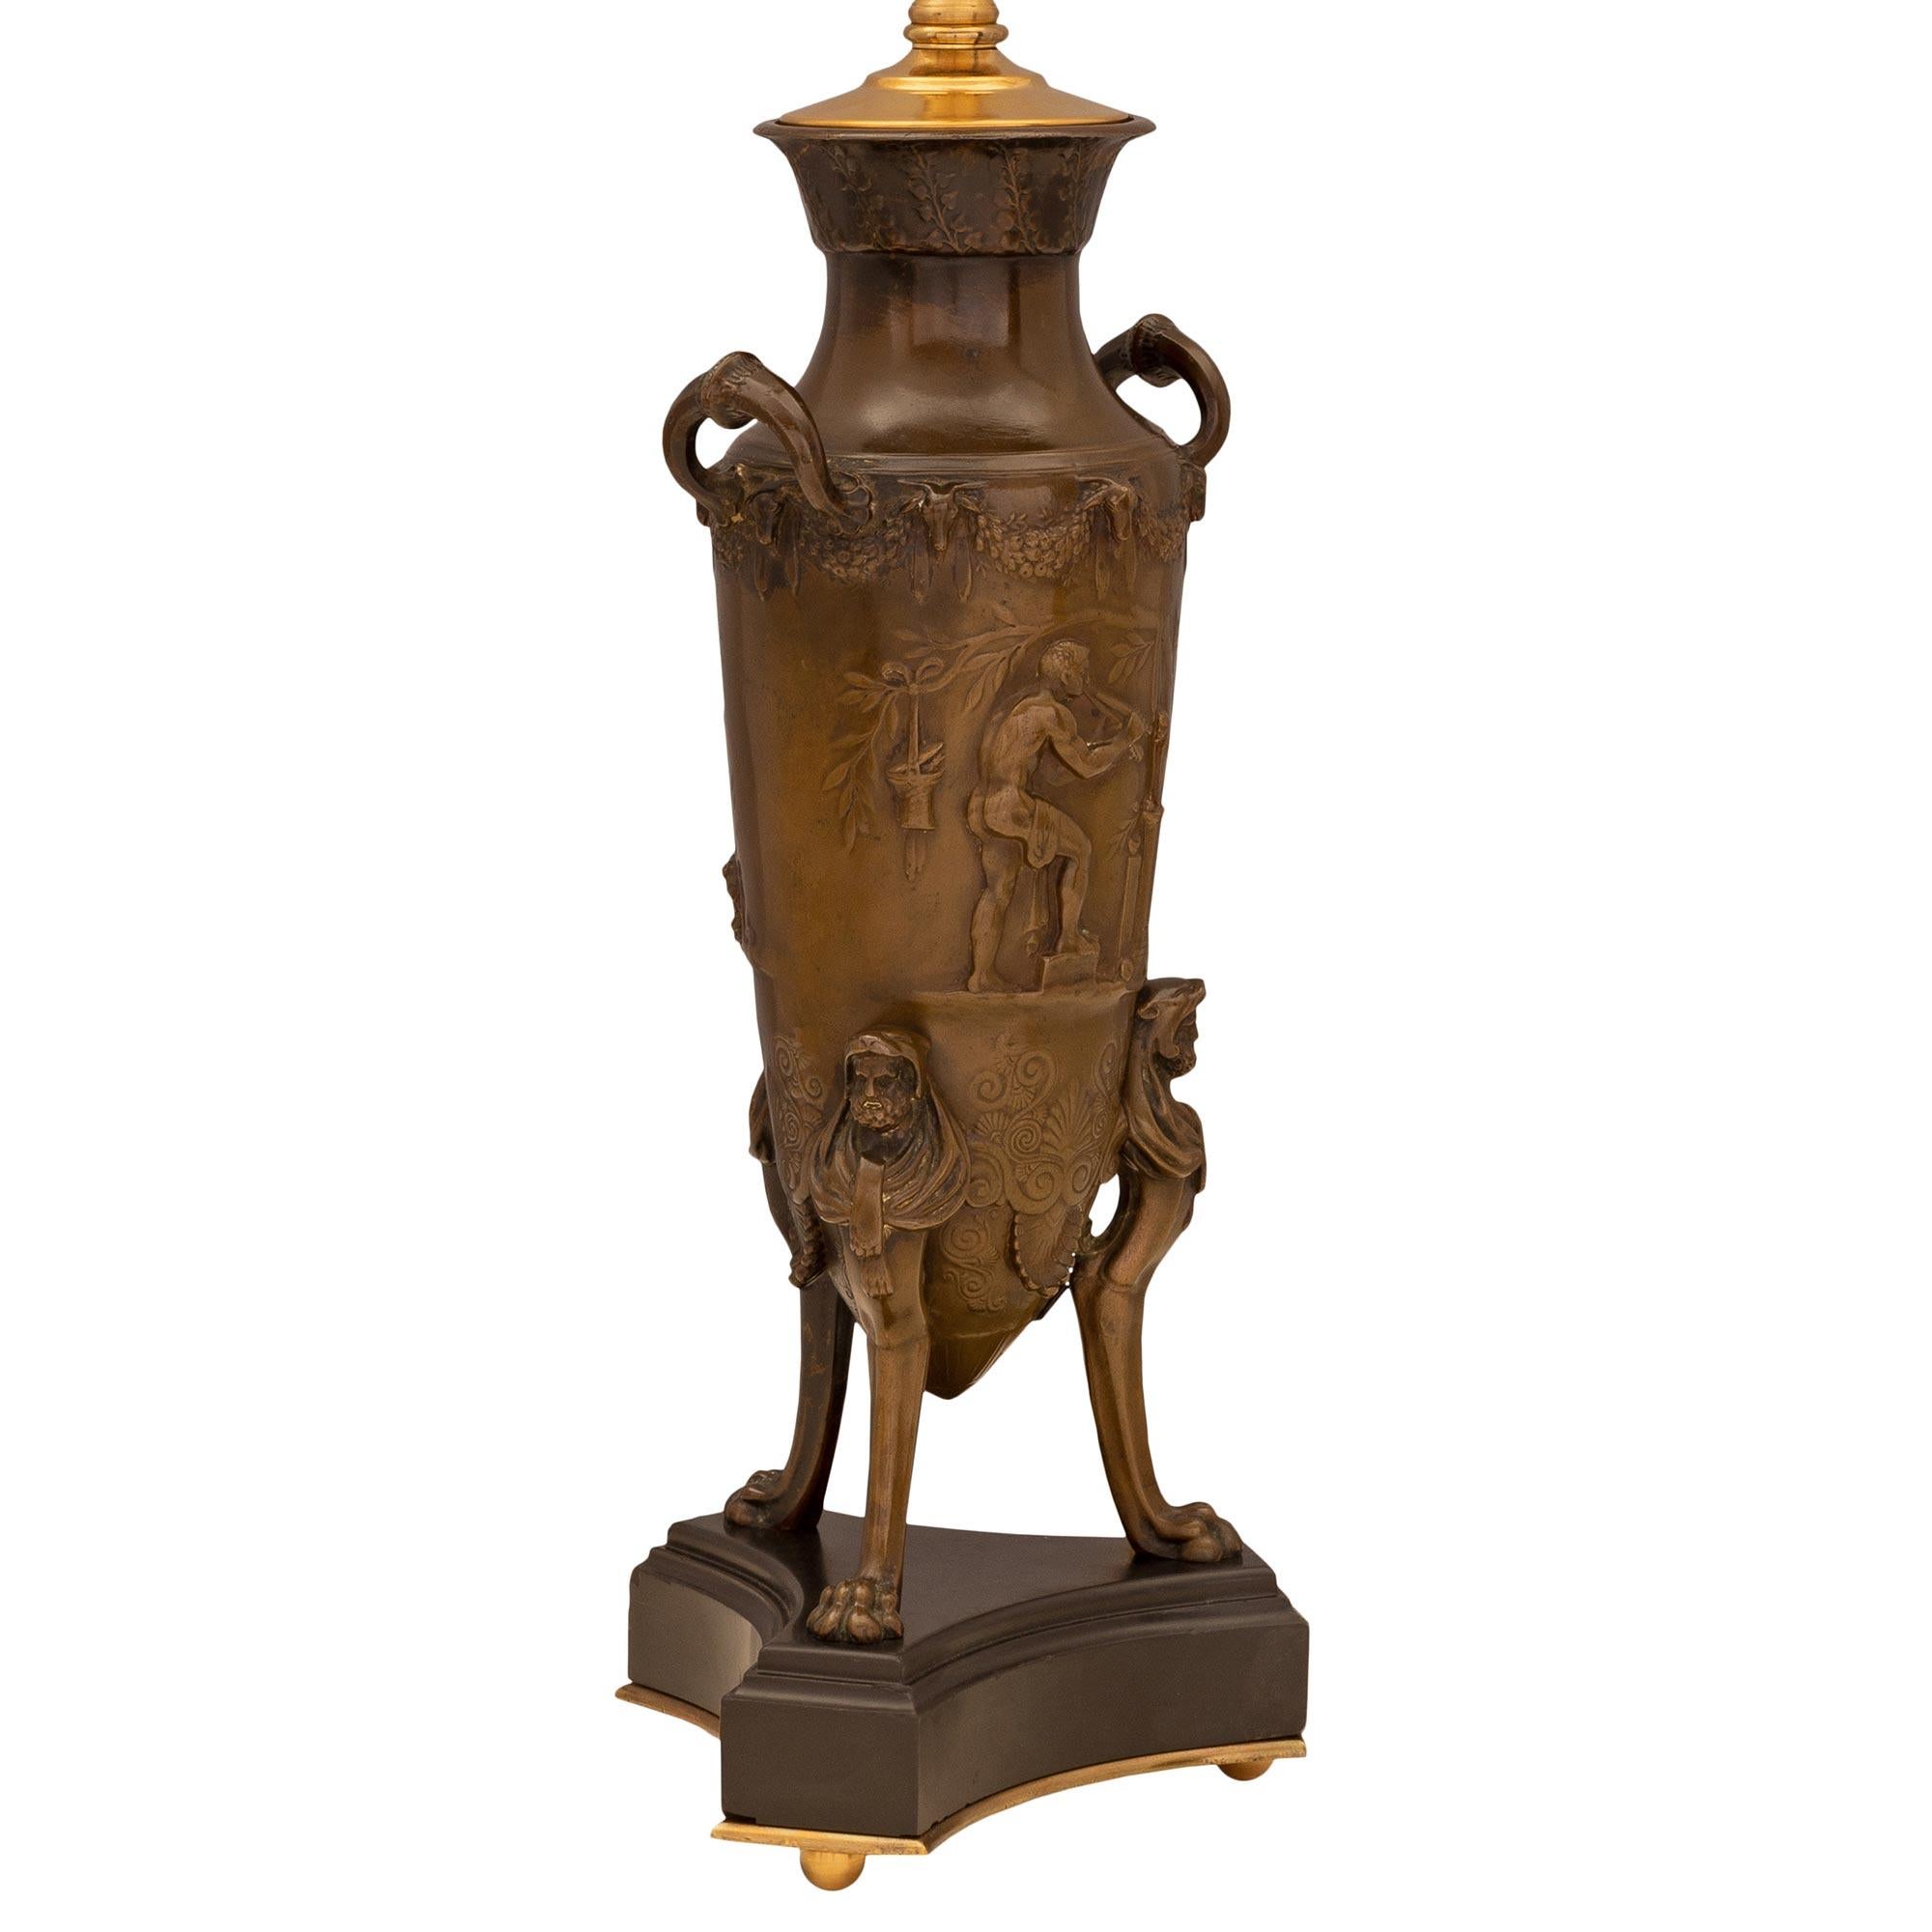 Une belle paire de lampes en bronze patiné et en marbre de style Renaissance française du 19ème siècle. Chaque lampe est surélevée par des pieds à boule en bronze doré sous la base triangulaire en marbre noir de Belgique, avec des angles coupés et